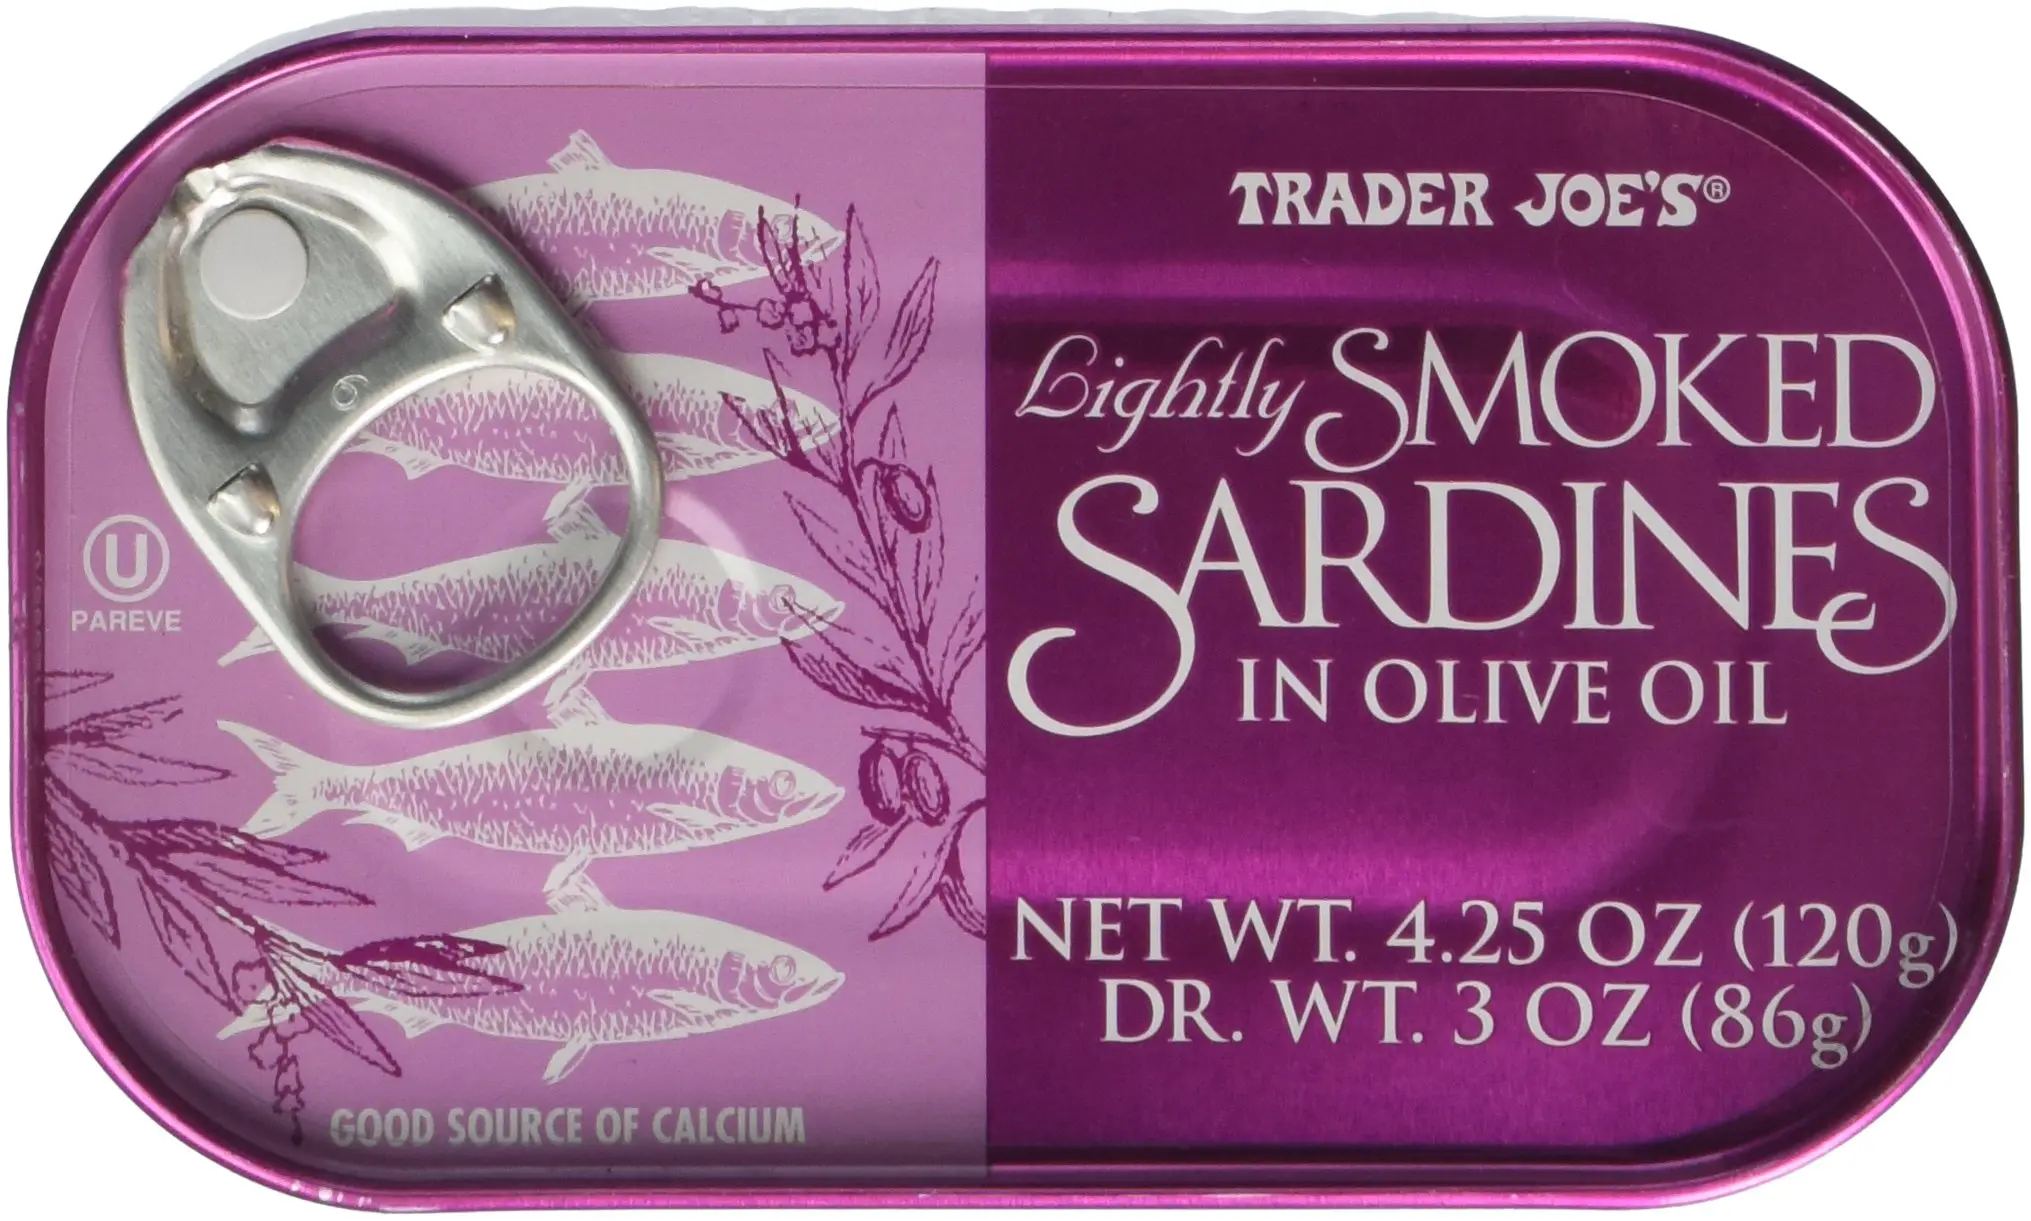 lightly smoked sardines - Why are sardines so cheap